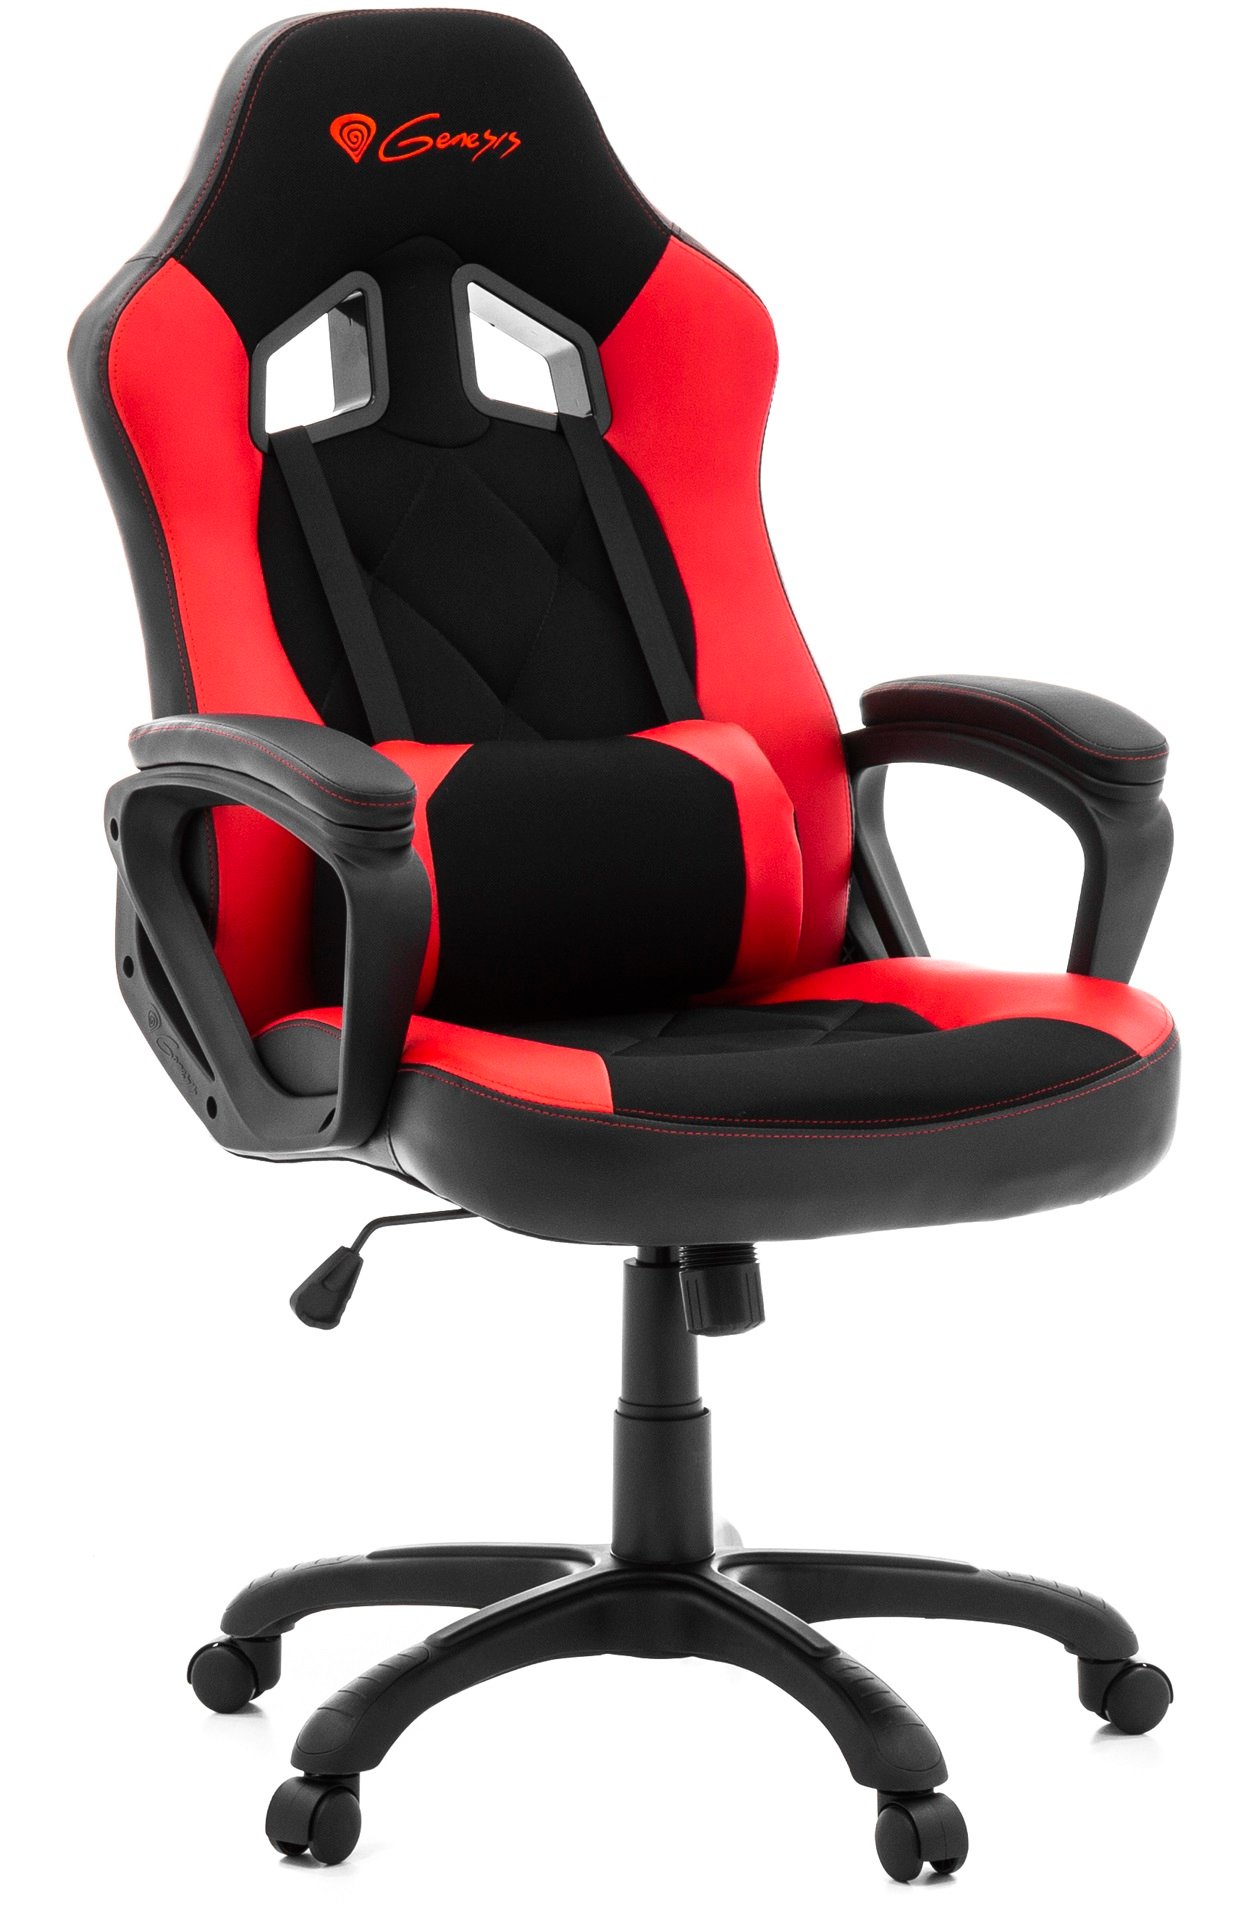 GENESIS Nitro 330 Czarno-czerwony Fotel - niskie ceny i opinie w Media  Expert